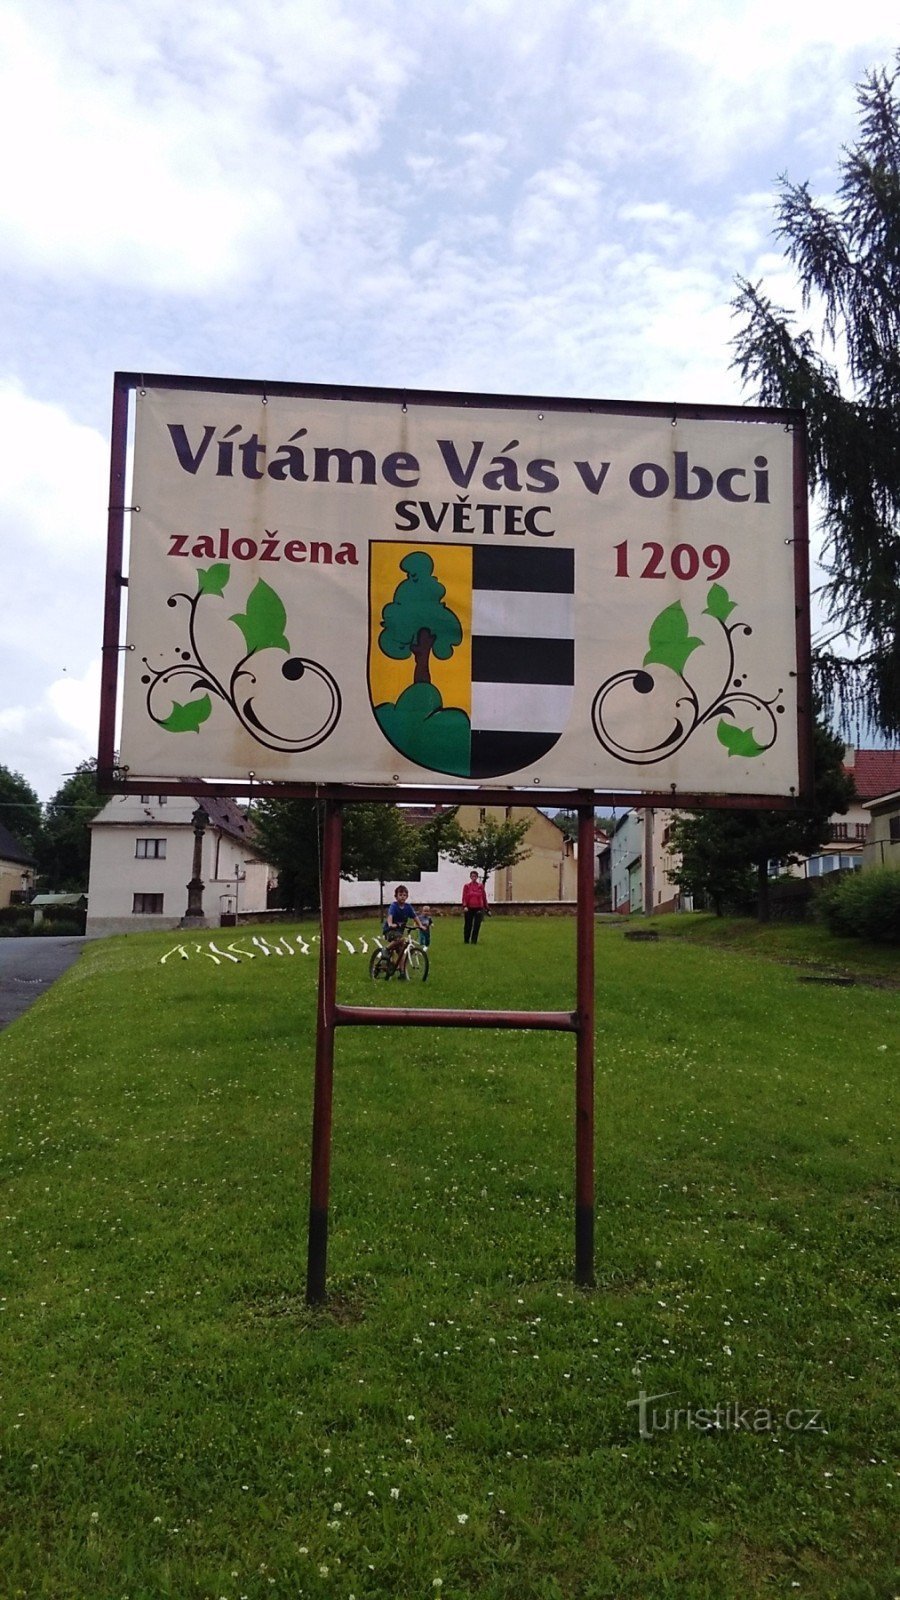 Het dorp Svetec